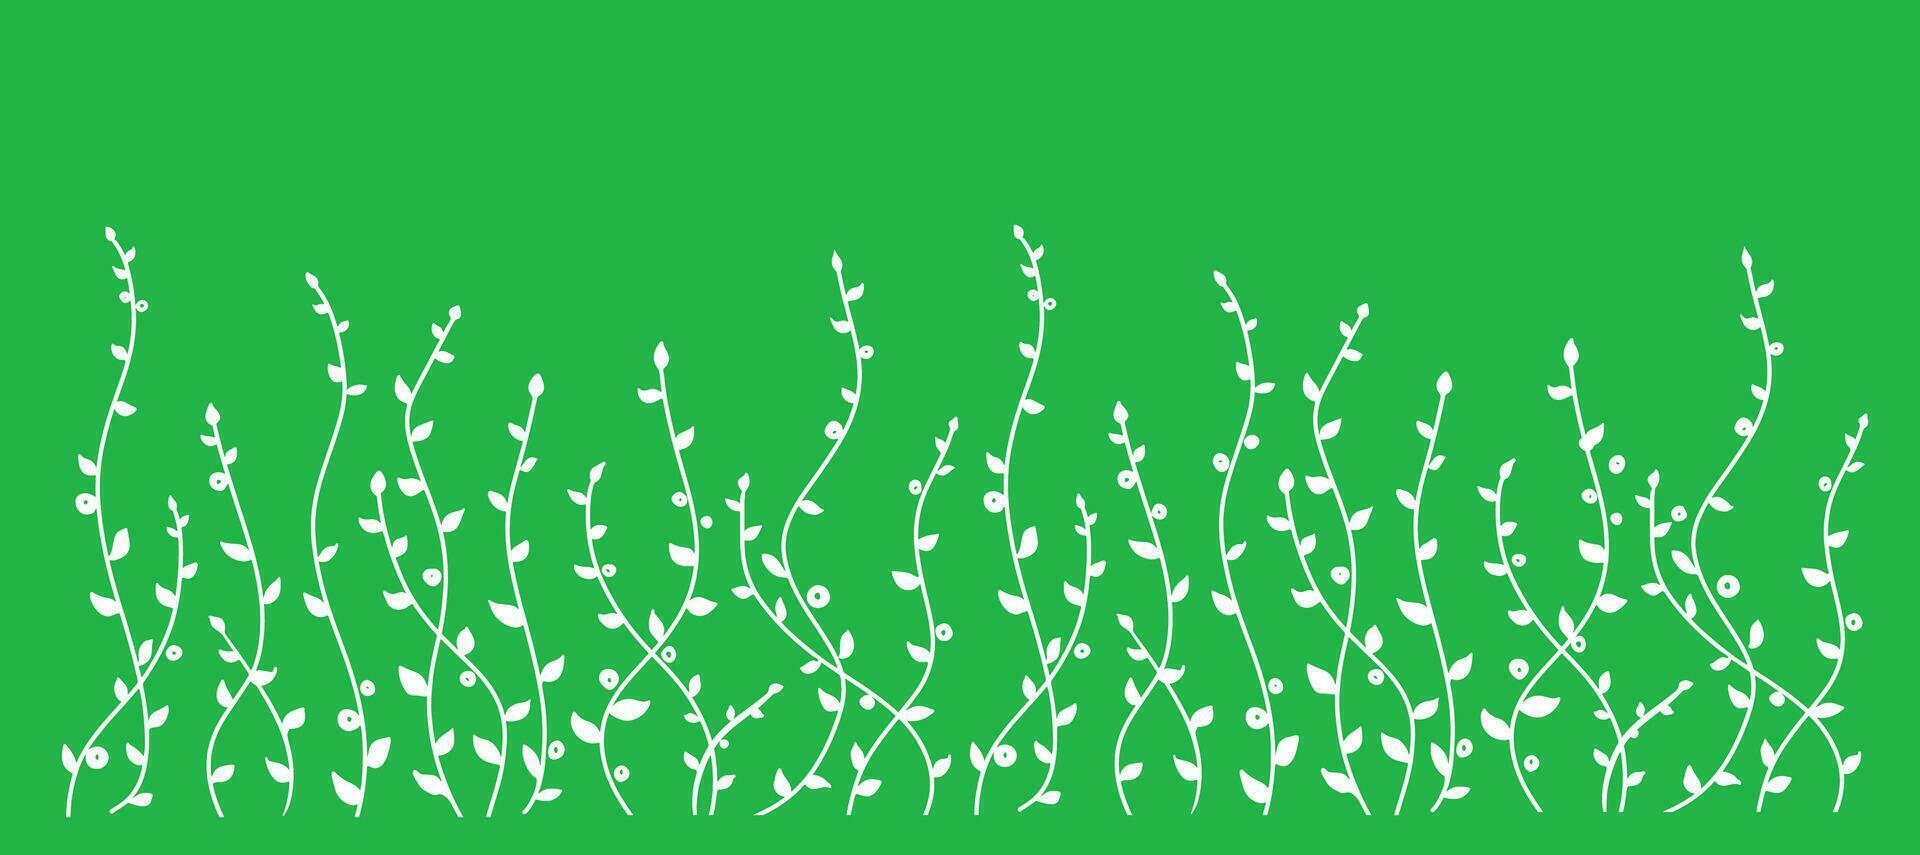 Hand gezeichnet einfach Weiß Gliederung Vektor Illustration. Silhouette wild Wiese Kräuter, Blütenstand. Rasen, Kräuter- Pflanzen auf ein Grün hintergrund.vektor Illustration.